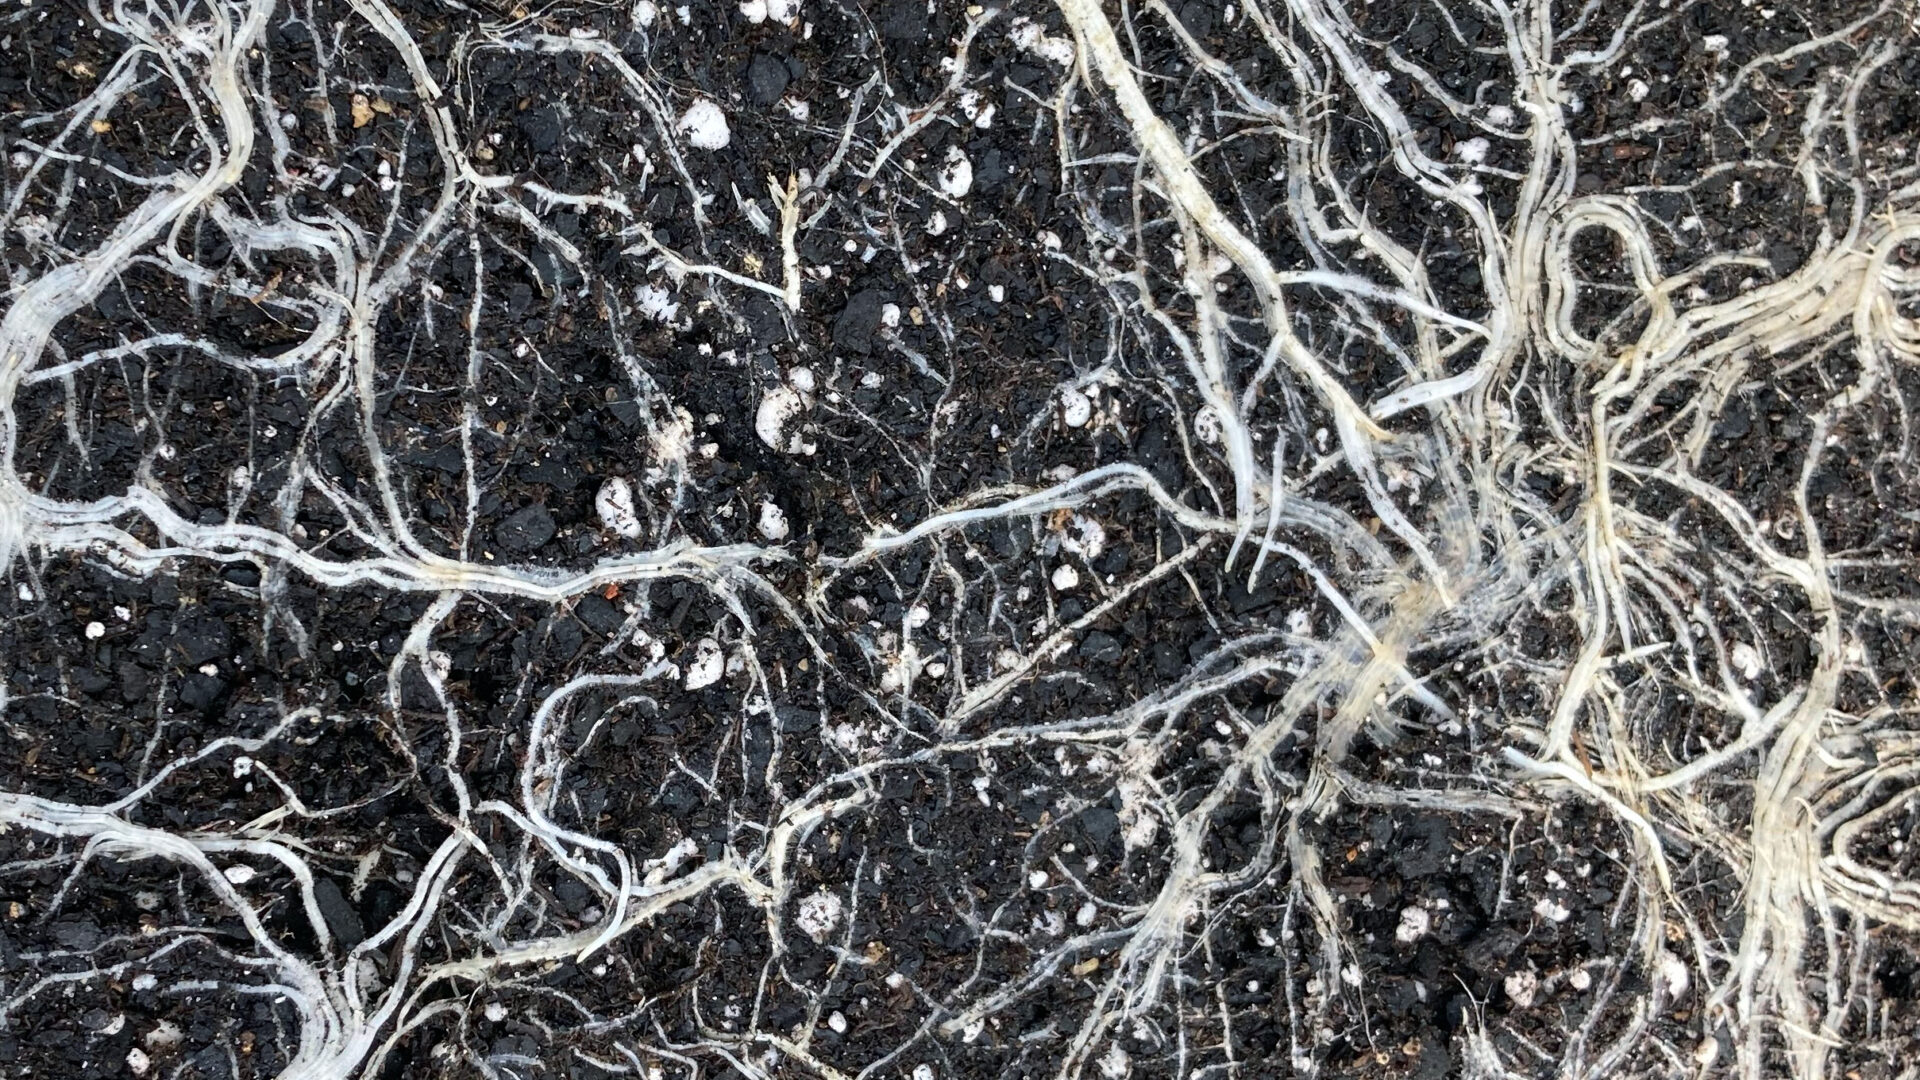 acapulco gold white roots mycorrhizae